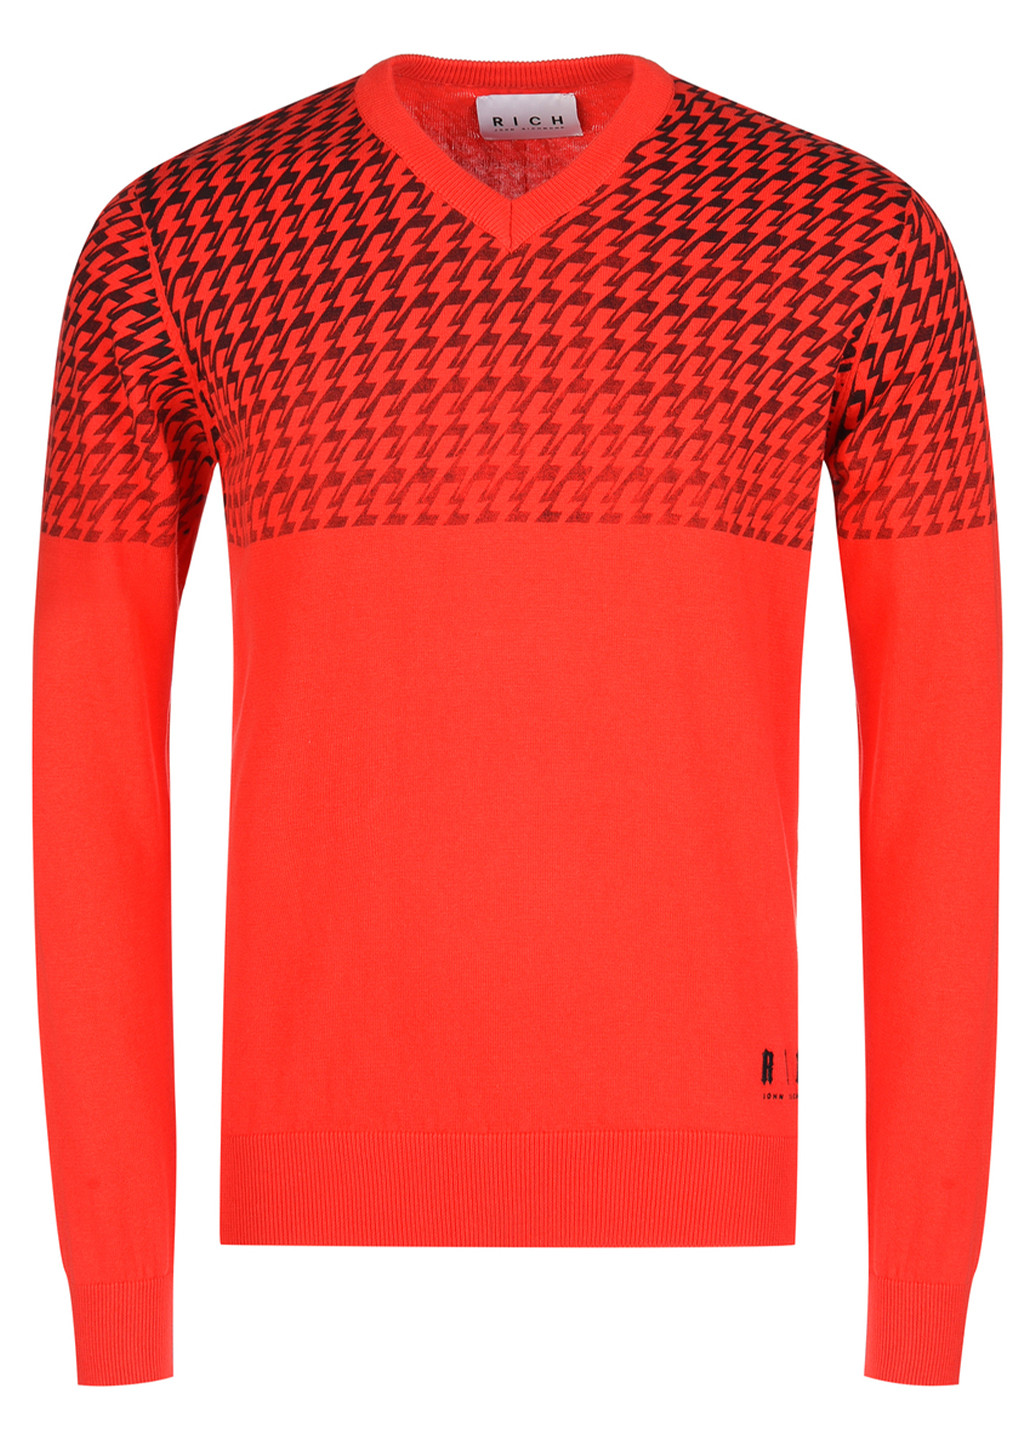 Червоний демісезонний пуловер John Richmond